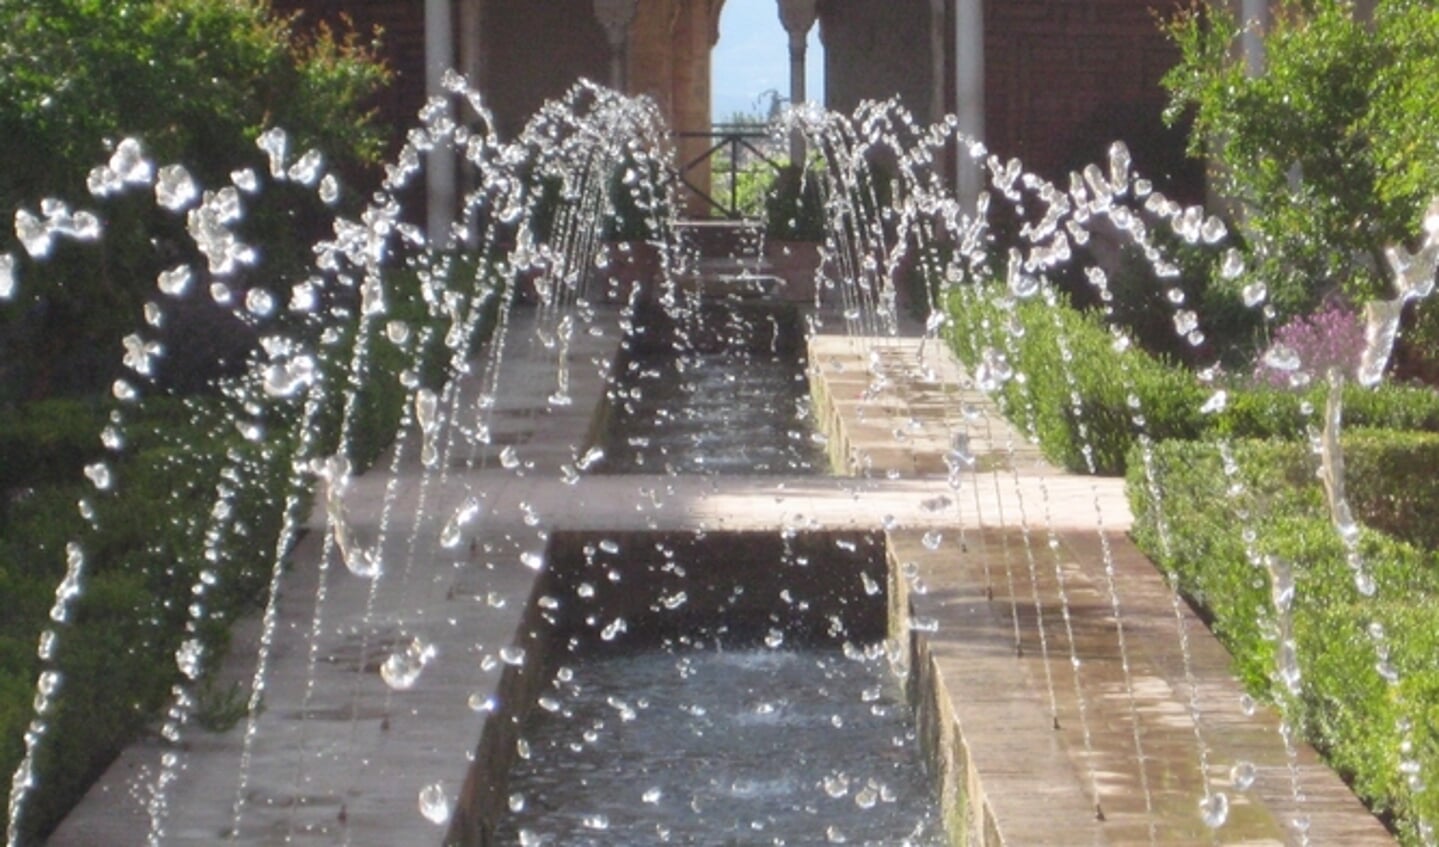 Waterelement in de tuin. (foto: Els de Weijer)